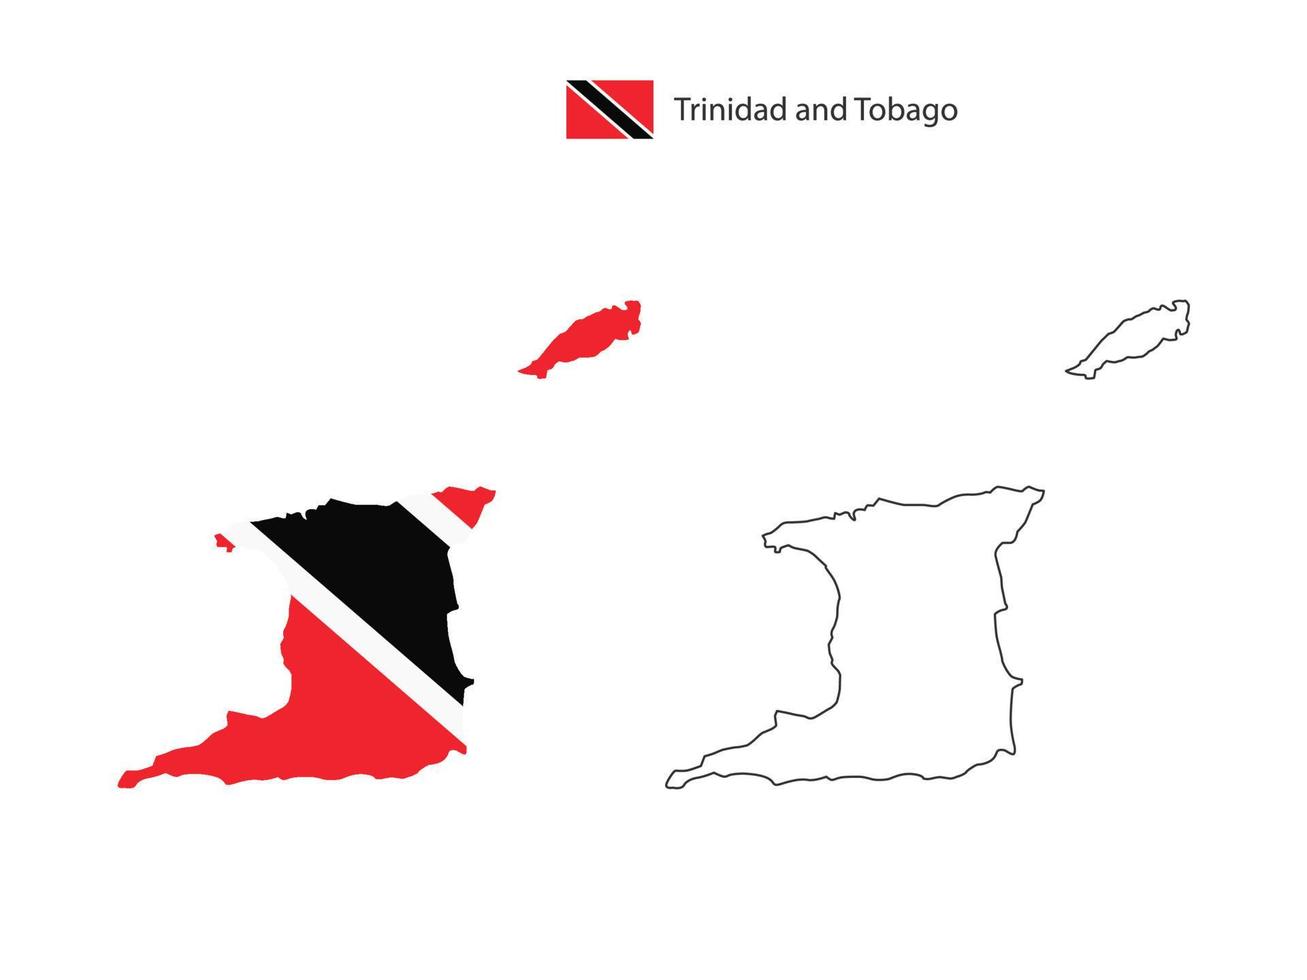 vector de ciudad de mapa de trinidad y tobago dividido por estilo de simplicidad de contorno. tiene 2 versiones, versión de línea delgada negra y versión de color de bandera de país. ambos mapas estaban en el fondo blanco.